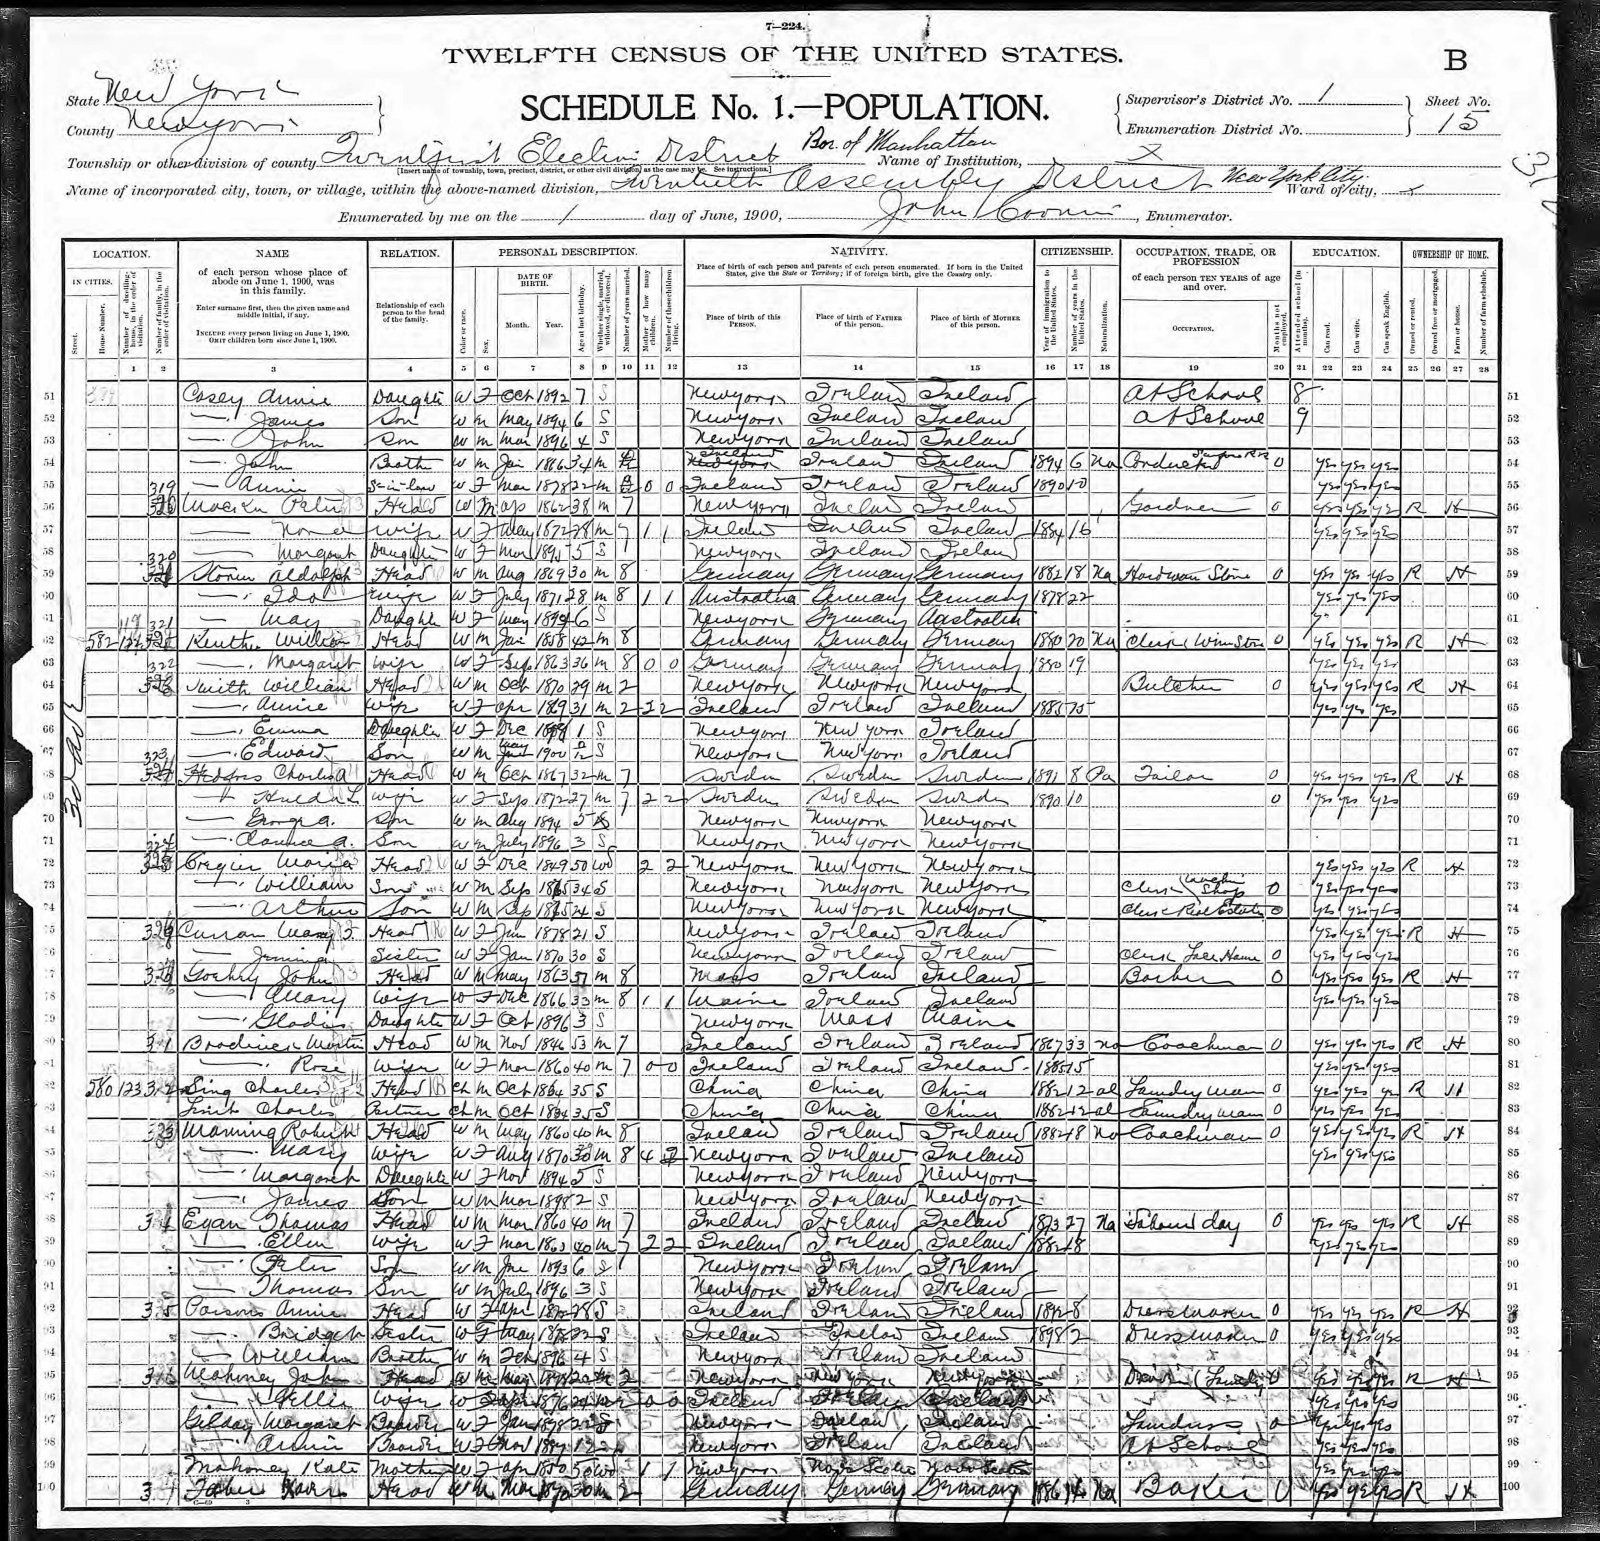 Keuthen, Wm, 1900 census.jpg